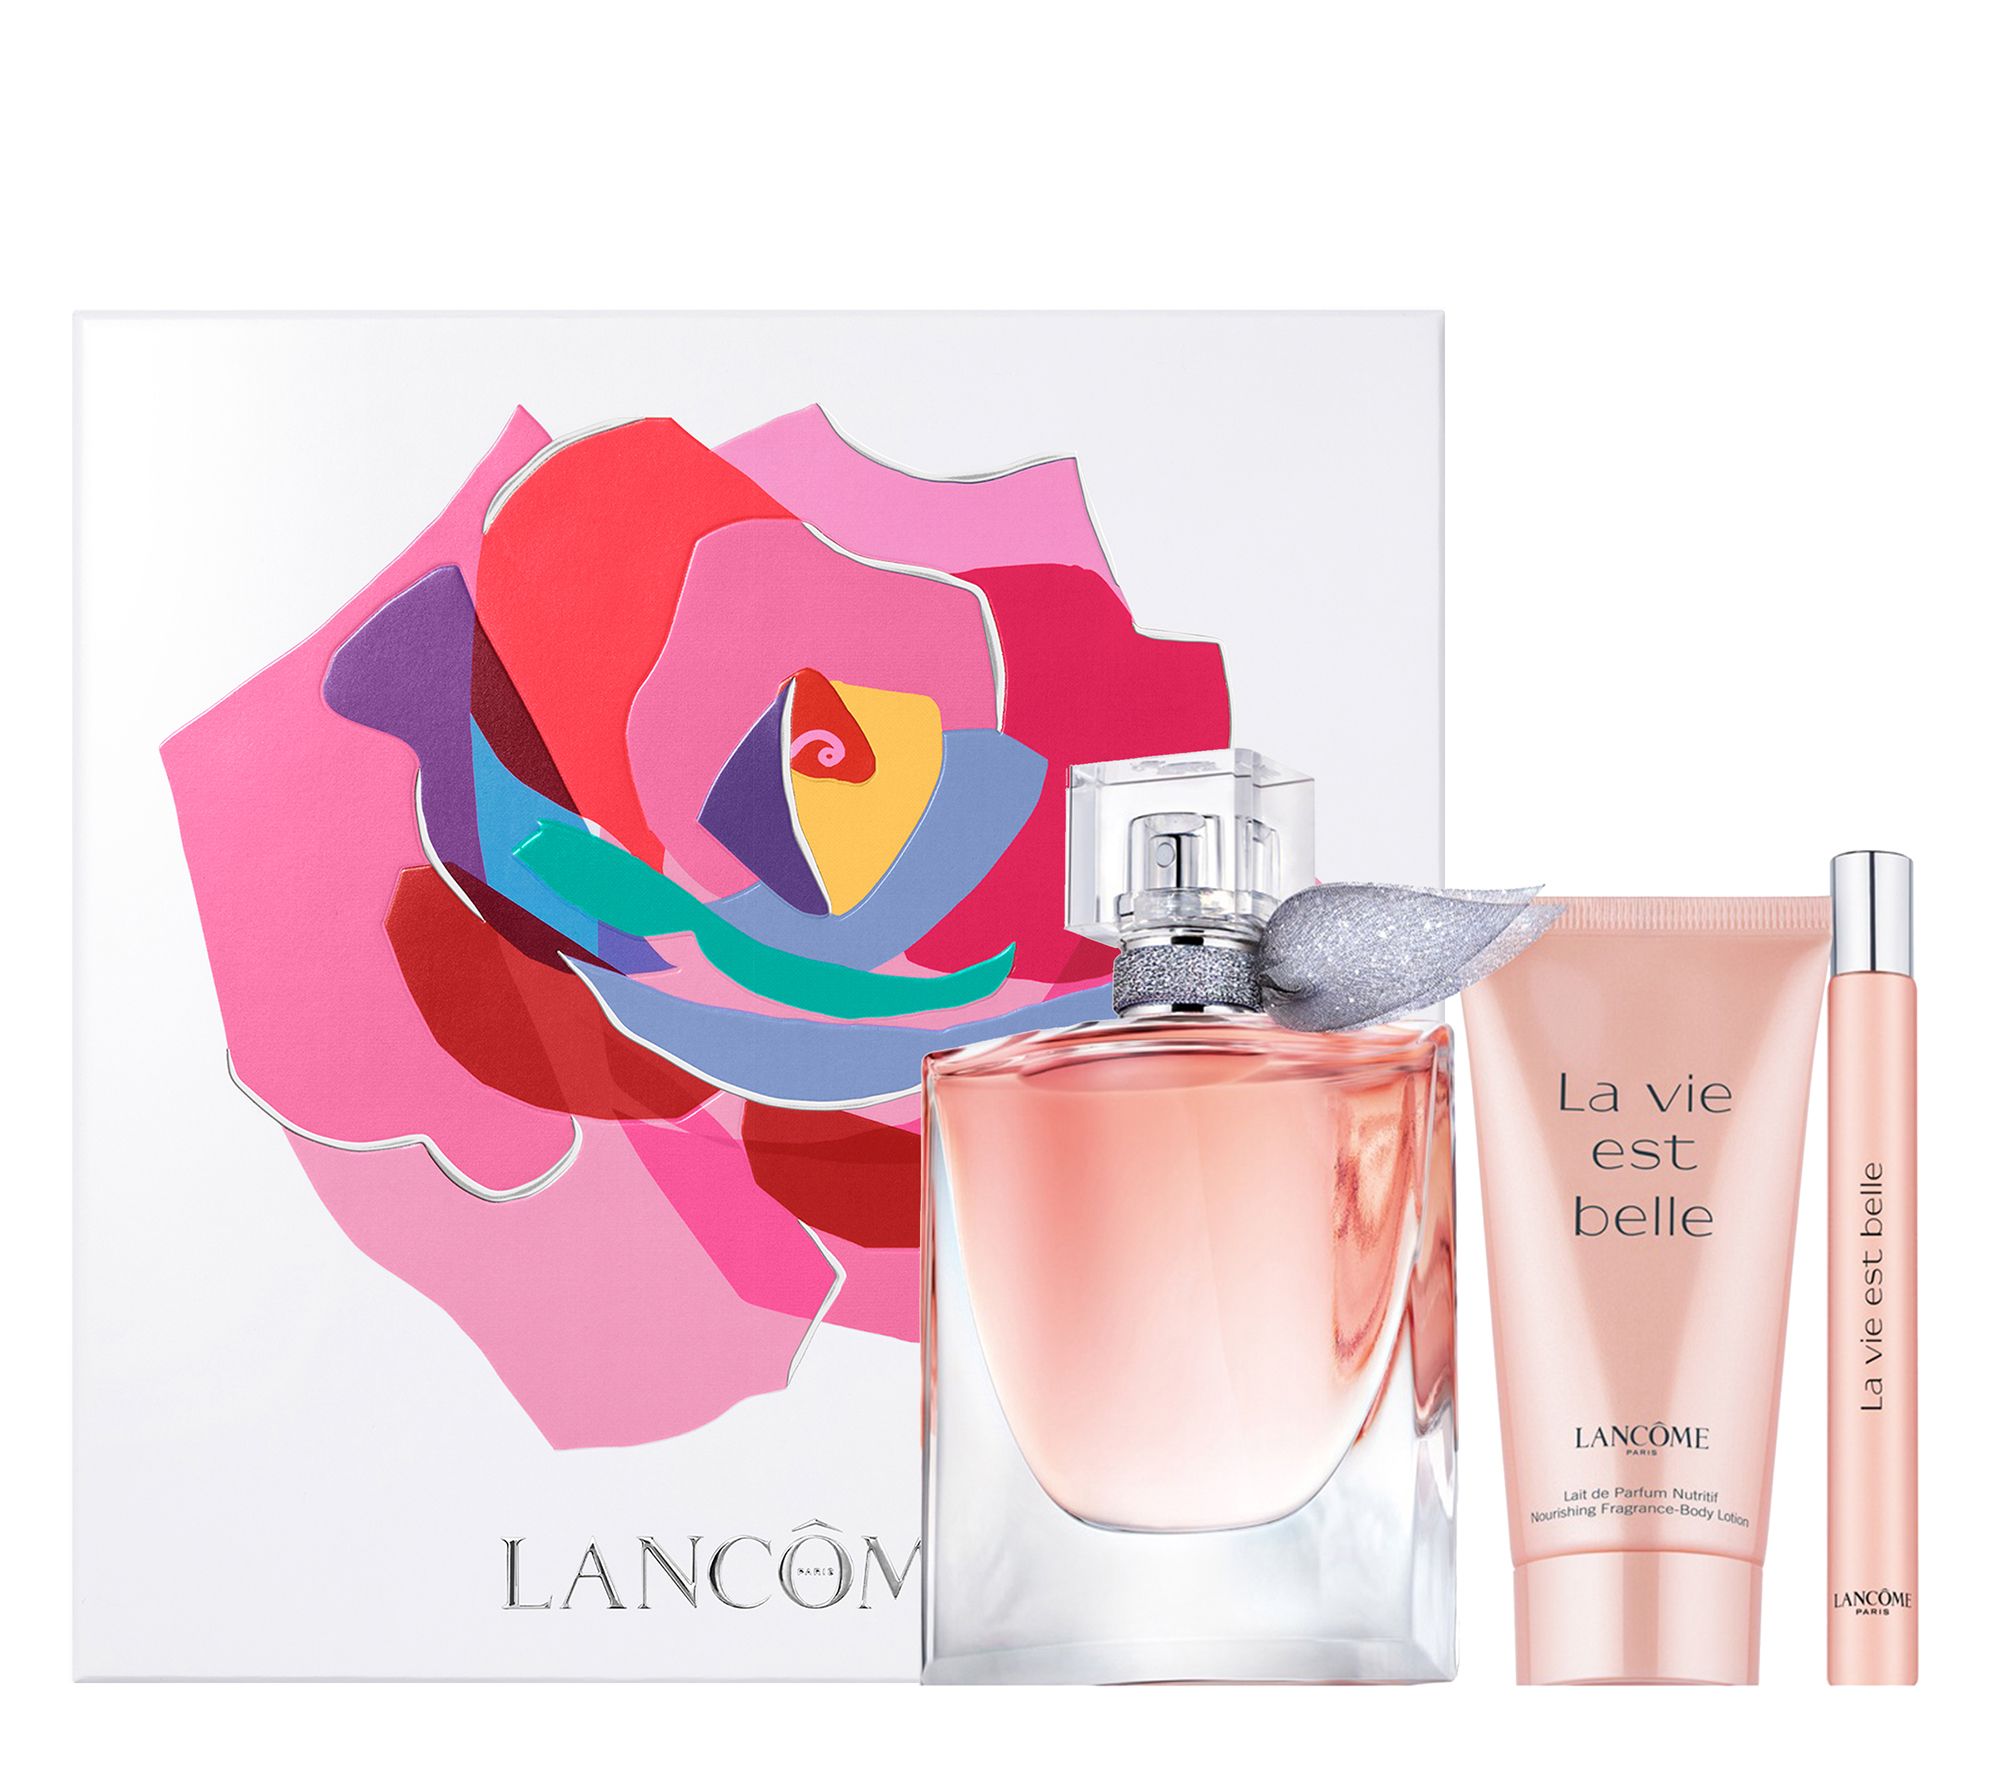 LANCÔME LA VIE EST BELLE EAU DE PARFUM - Parfum - not defined/non